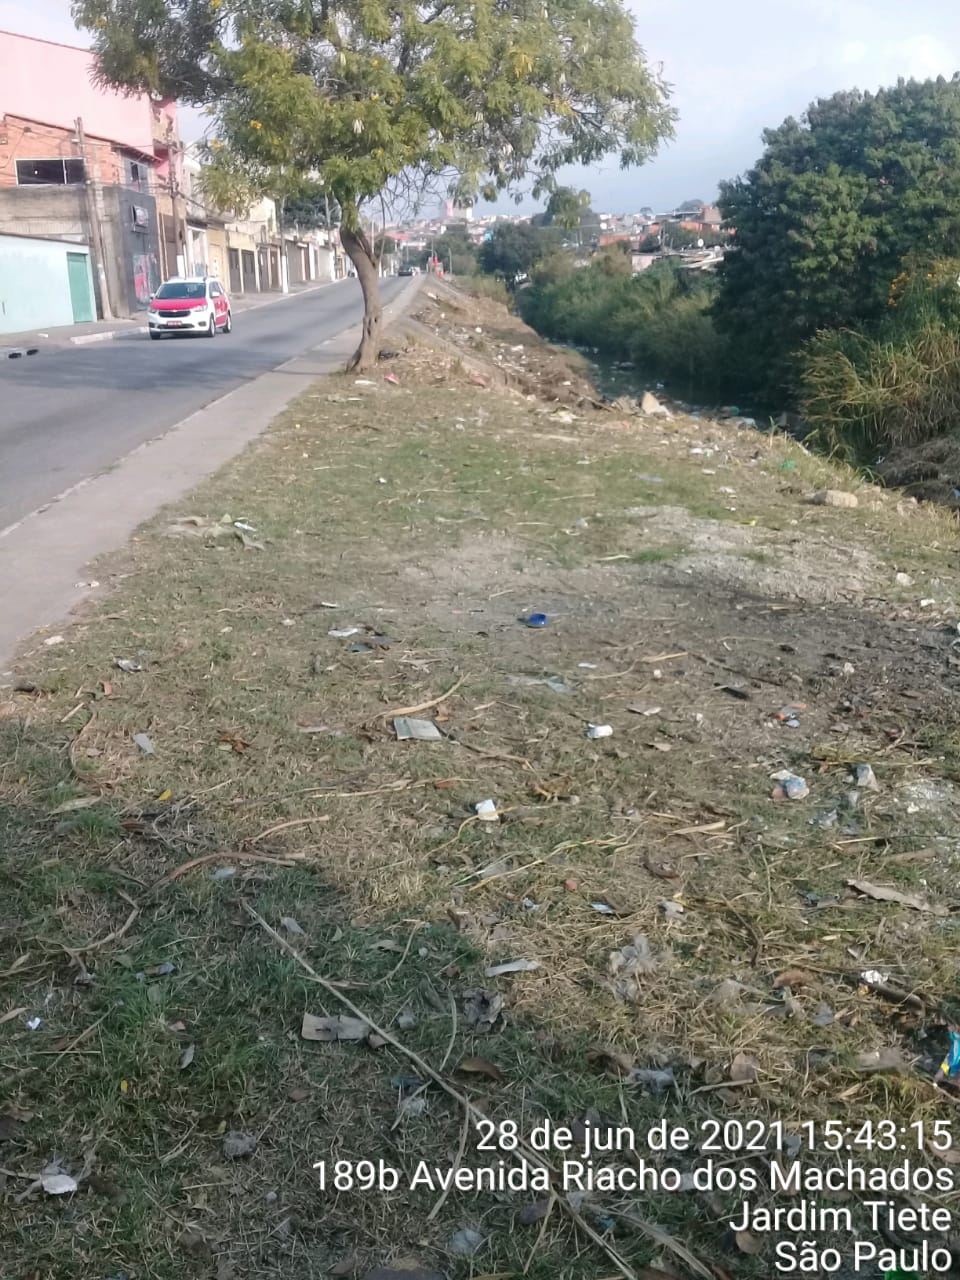 Margem esquerda do rio com a grama aparada e limpeza de detritos feita. Foto identificada como Riacho dos Machados.